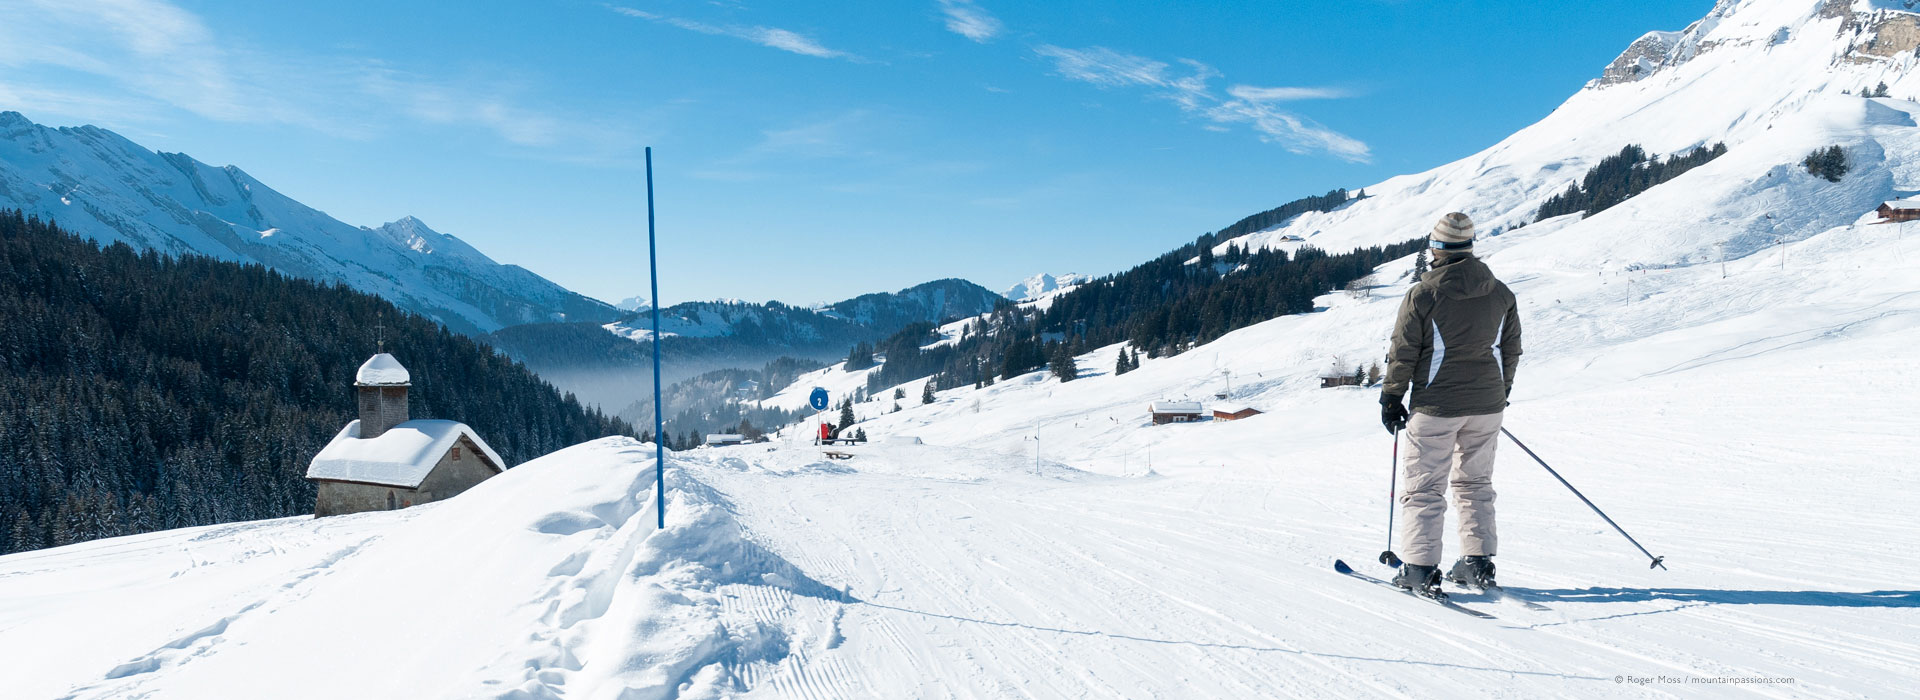 Low, wide view of skier in piste approaching mountain chapel